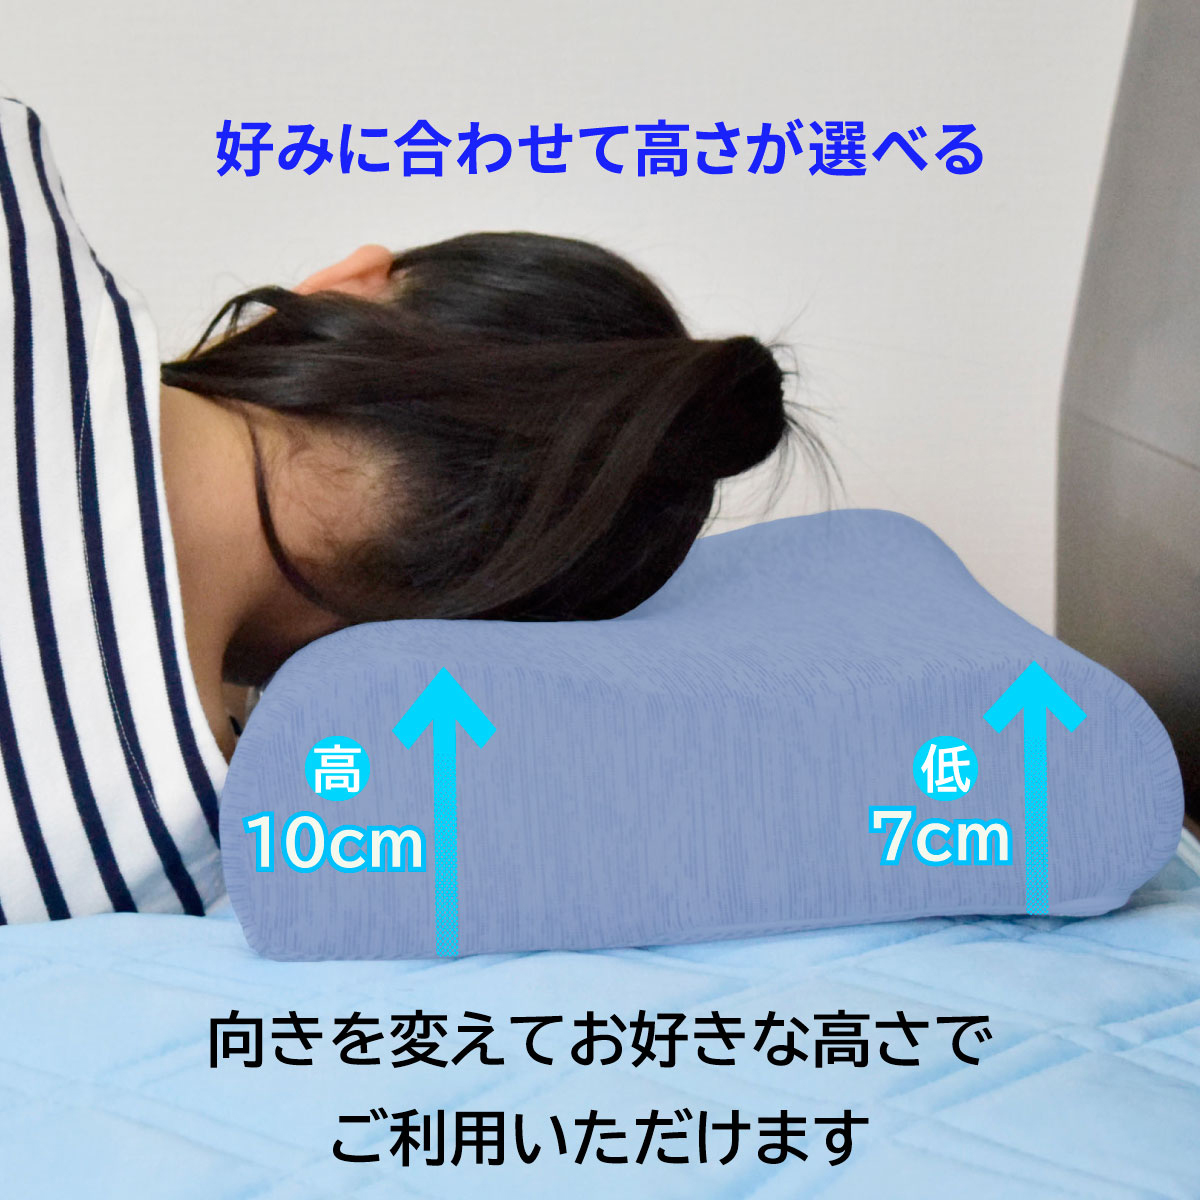 枕の方向を変えることでお好みの高さで眠れることを明記したバナー画像